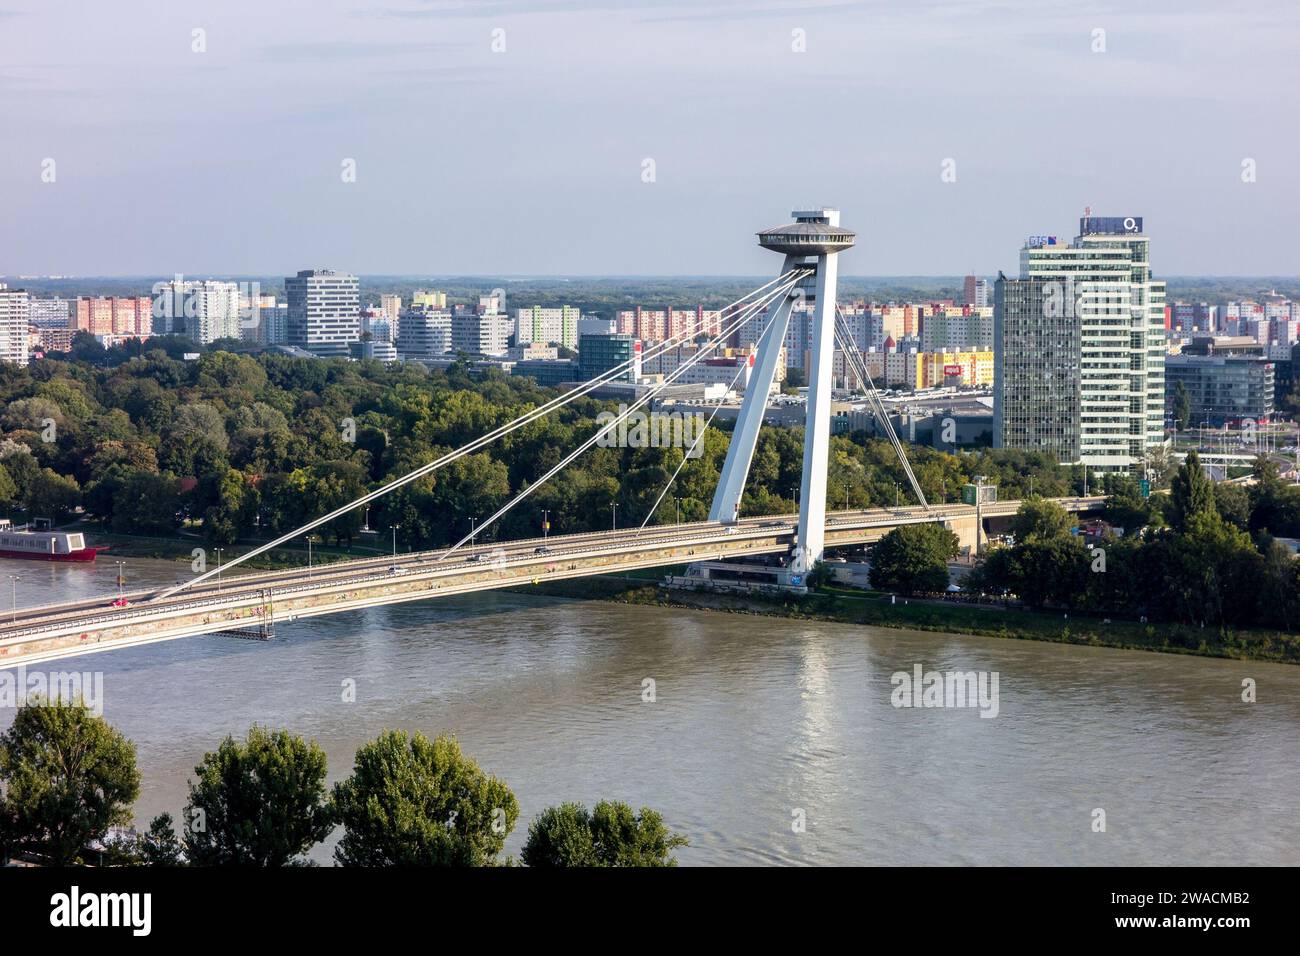 BRATISLAVA, SLOVAKIA - SEPTEMBER 6, 2014: Famous New Bridge (Novy most) across the Danube River in Bratislava, Slovakia. Stock Photo